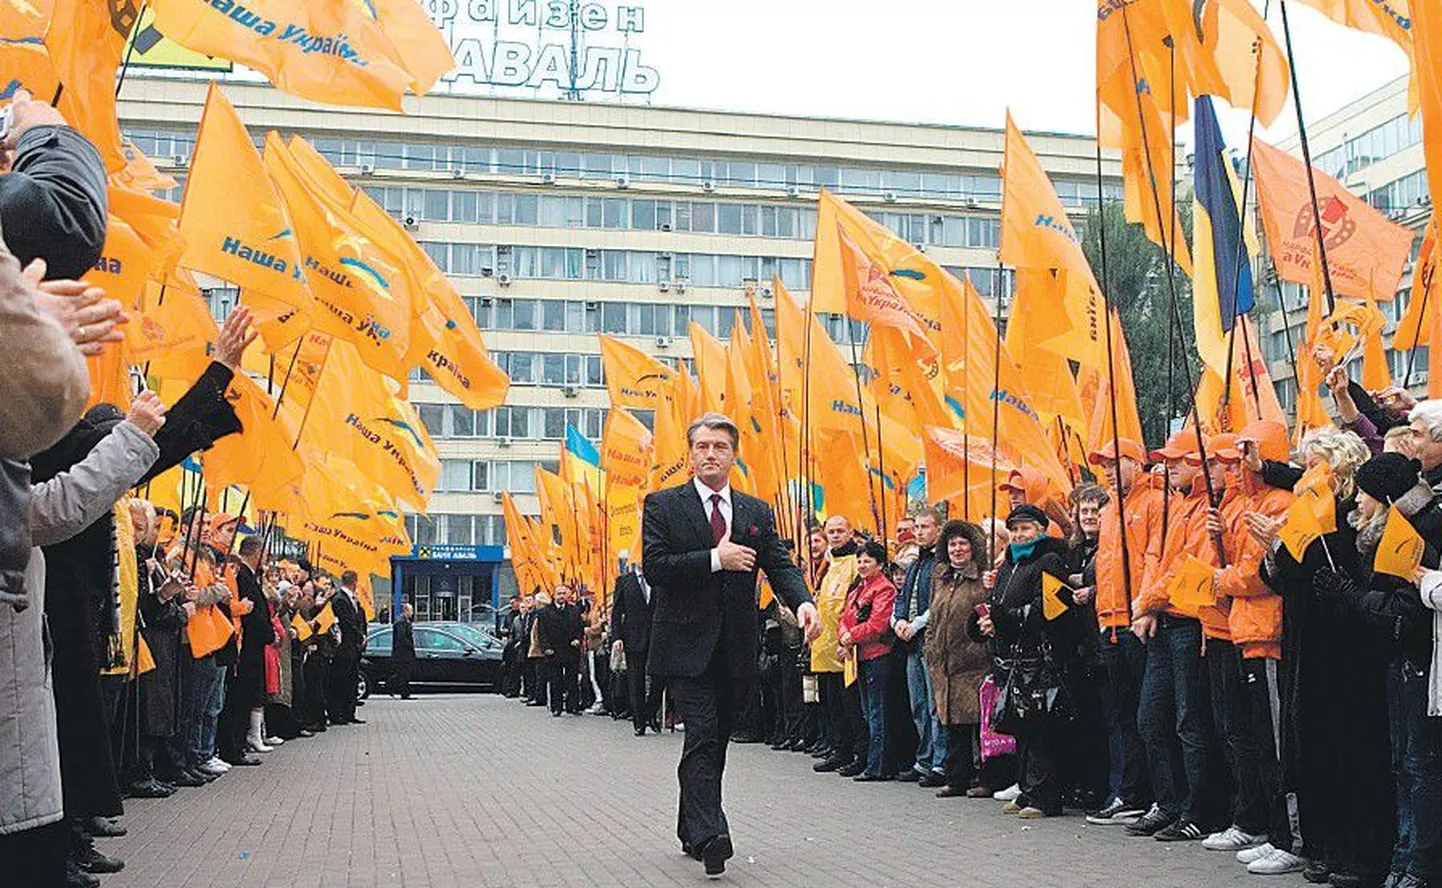 Президент Украины Виктор Ющенко посетил вчера Центральную избирательную комиссию (ЦИК), чтобы подать документы на регистрацию его кандидатом в президенты.